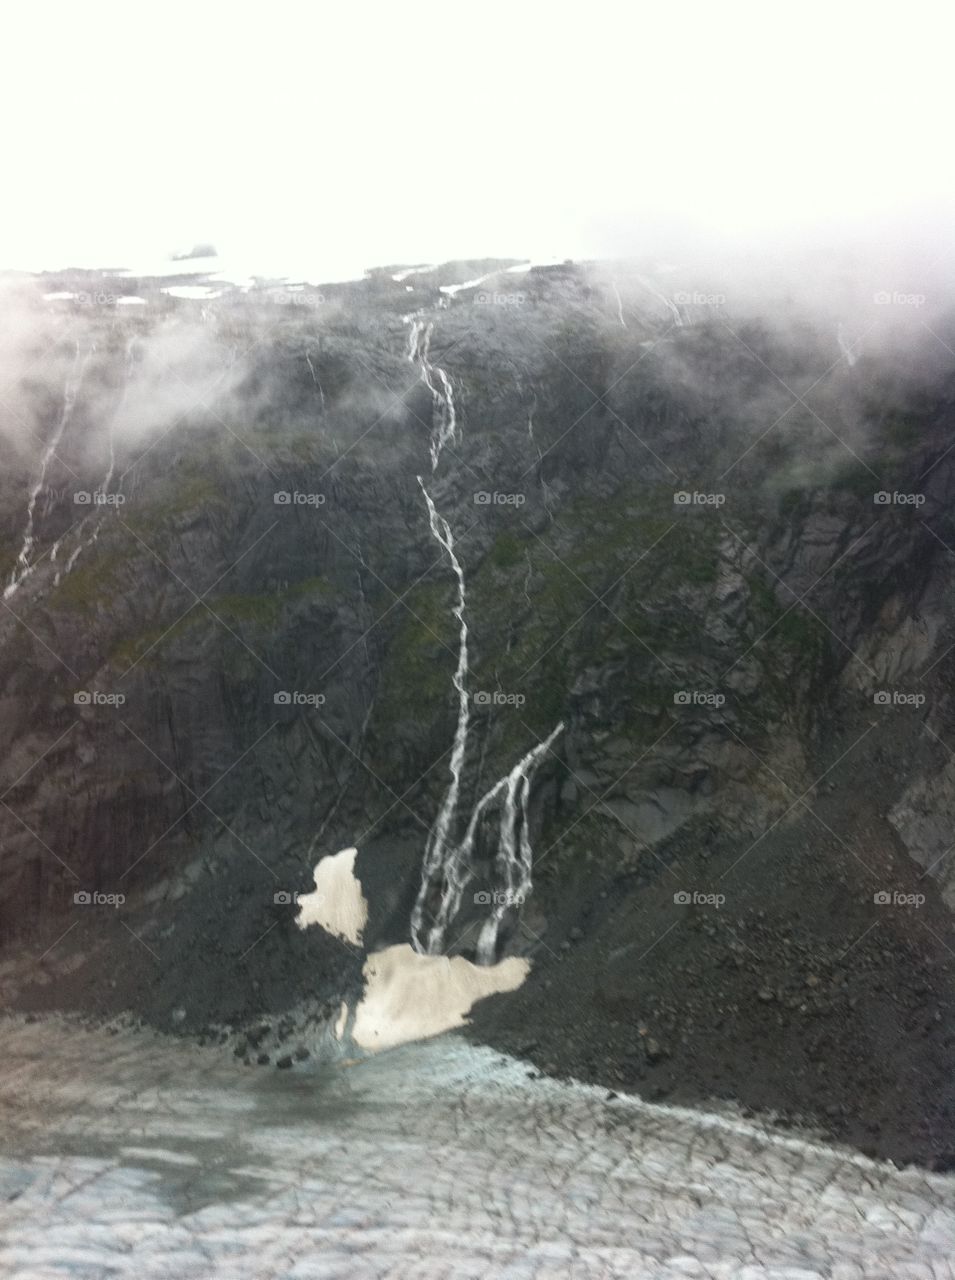 Alaskan falls 